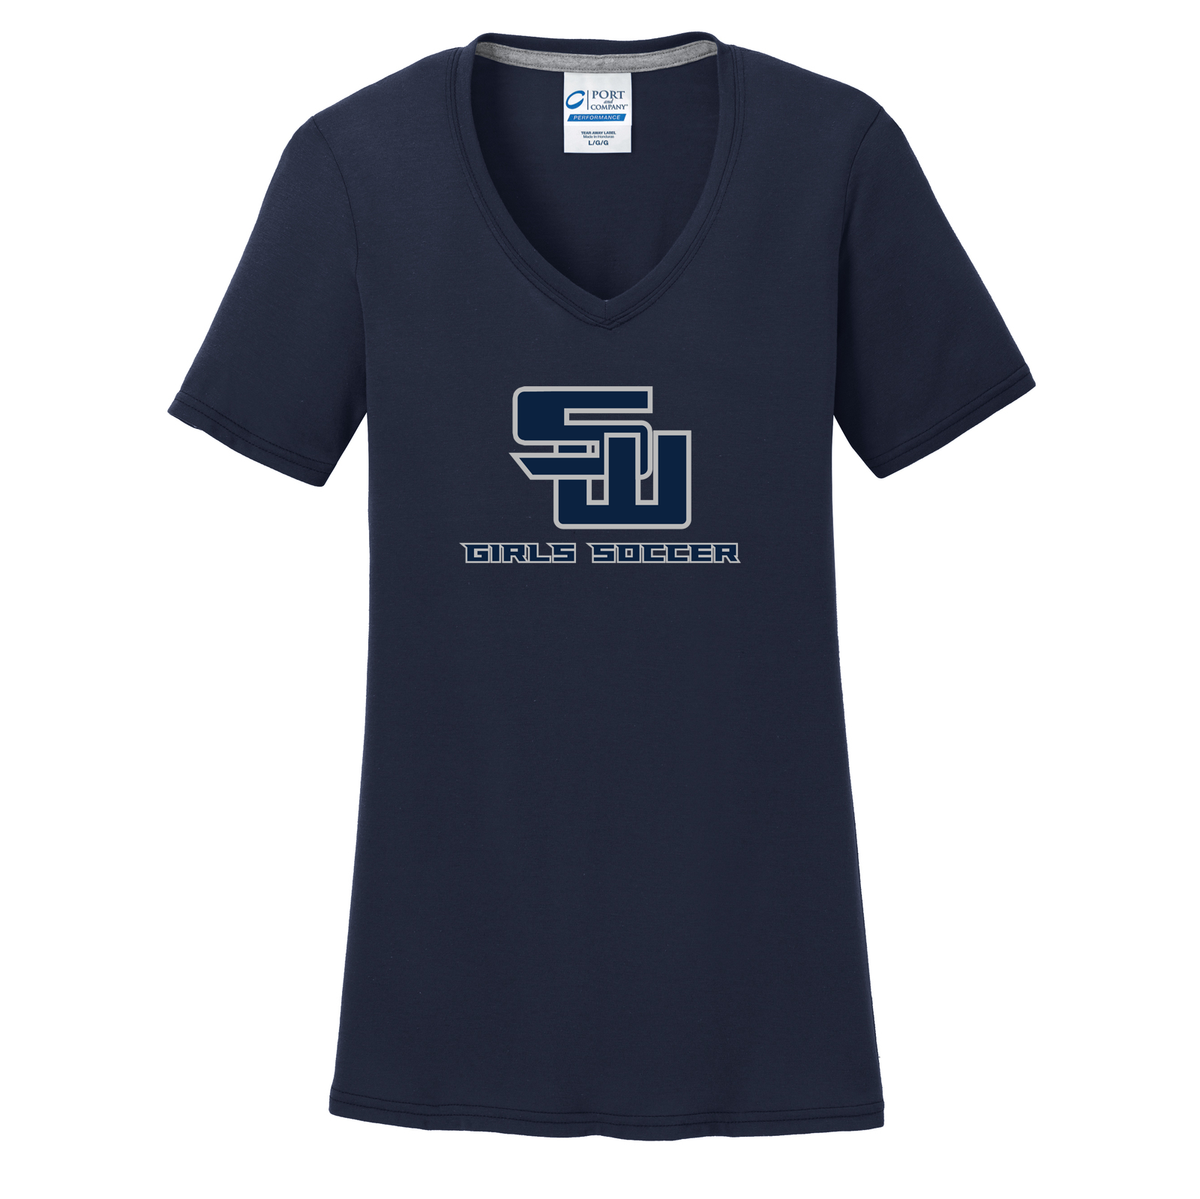 Smithtown West Girls Soccer Women's T-Shirt